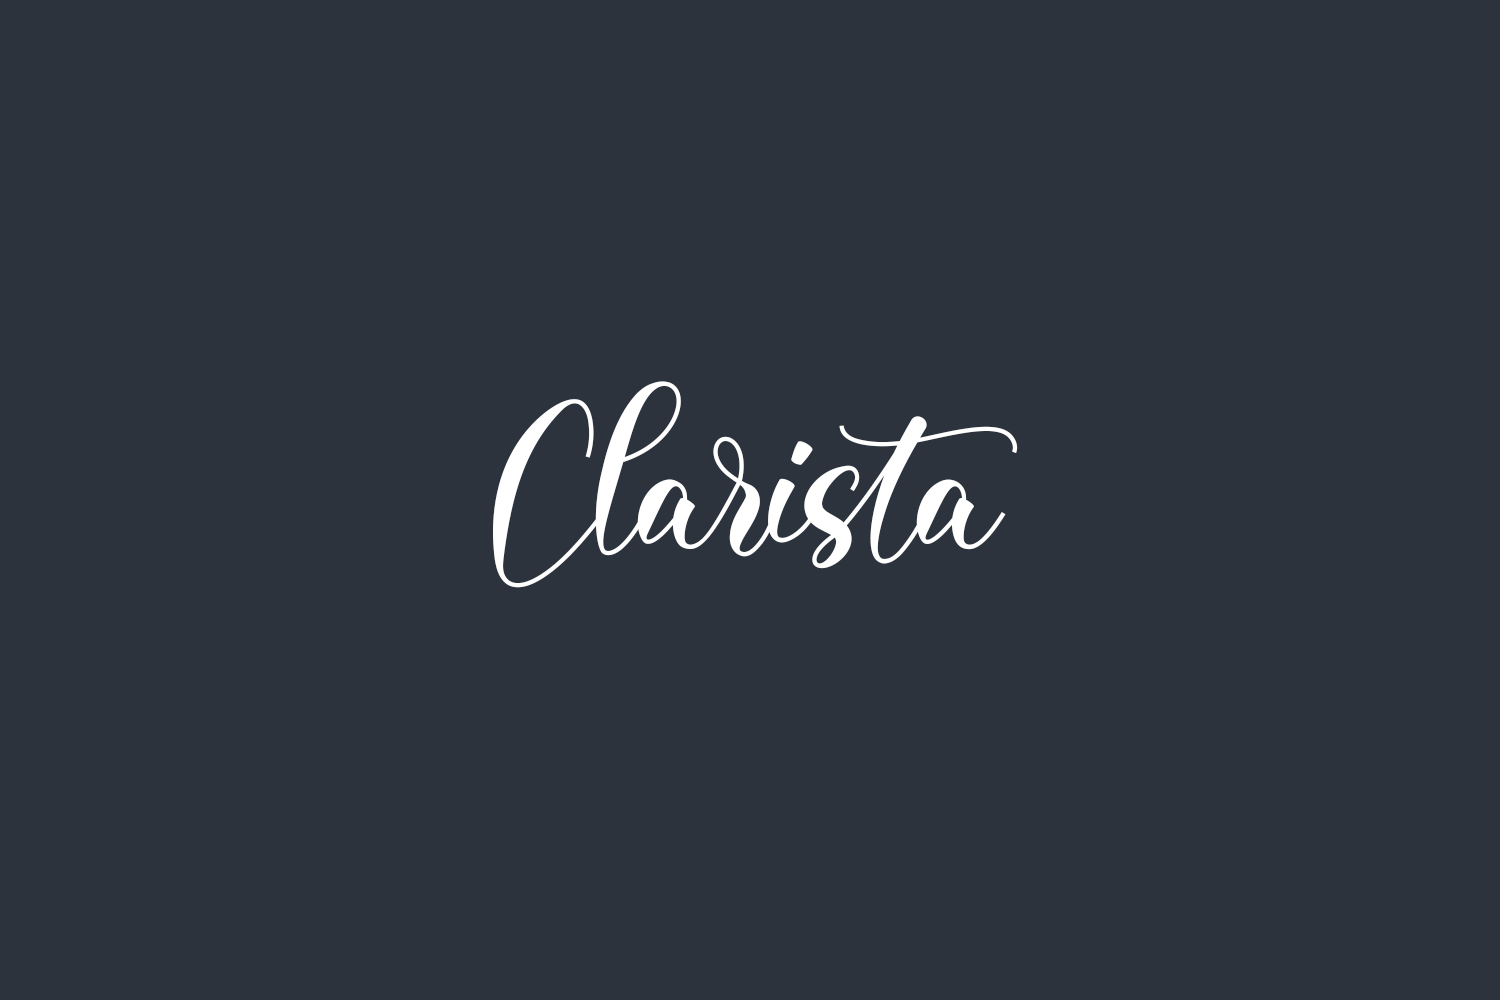 Clarista